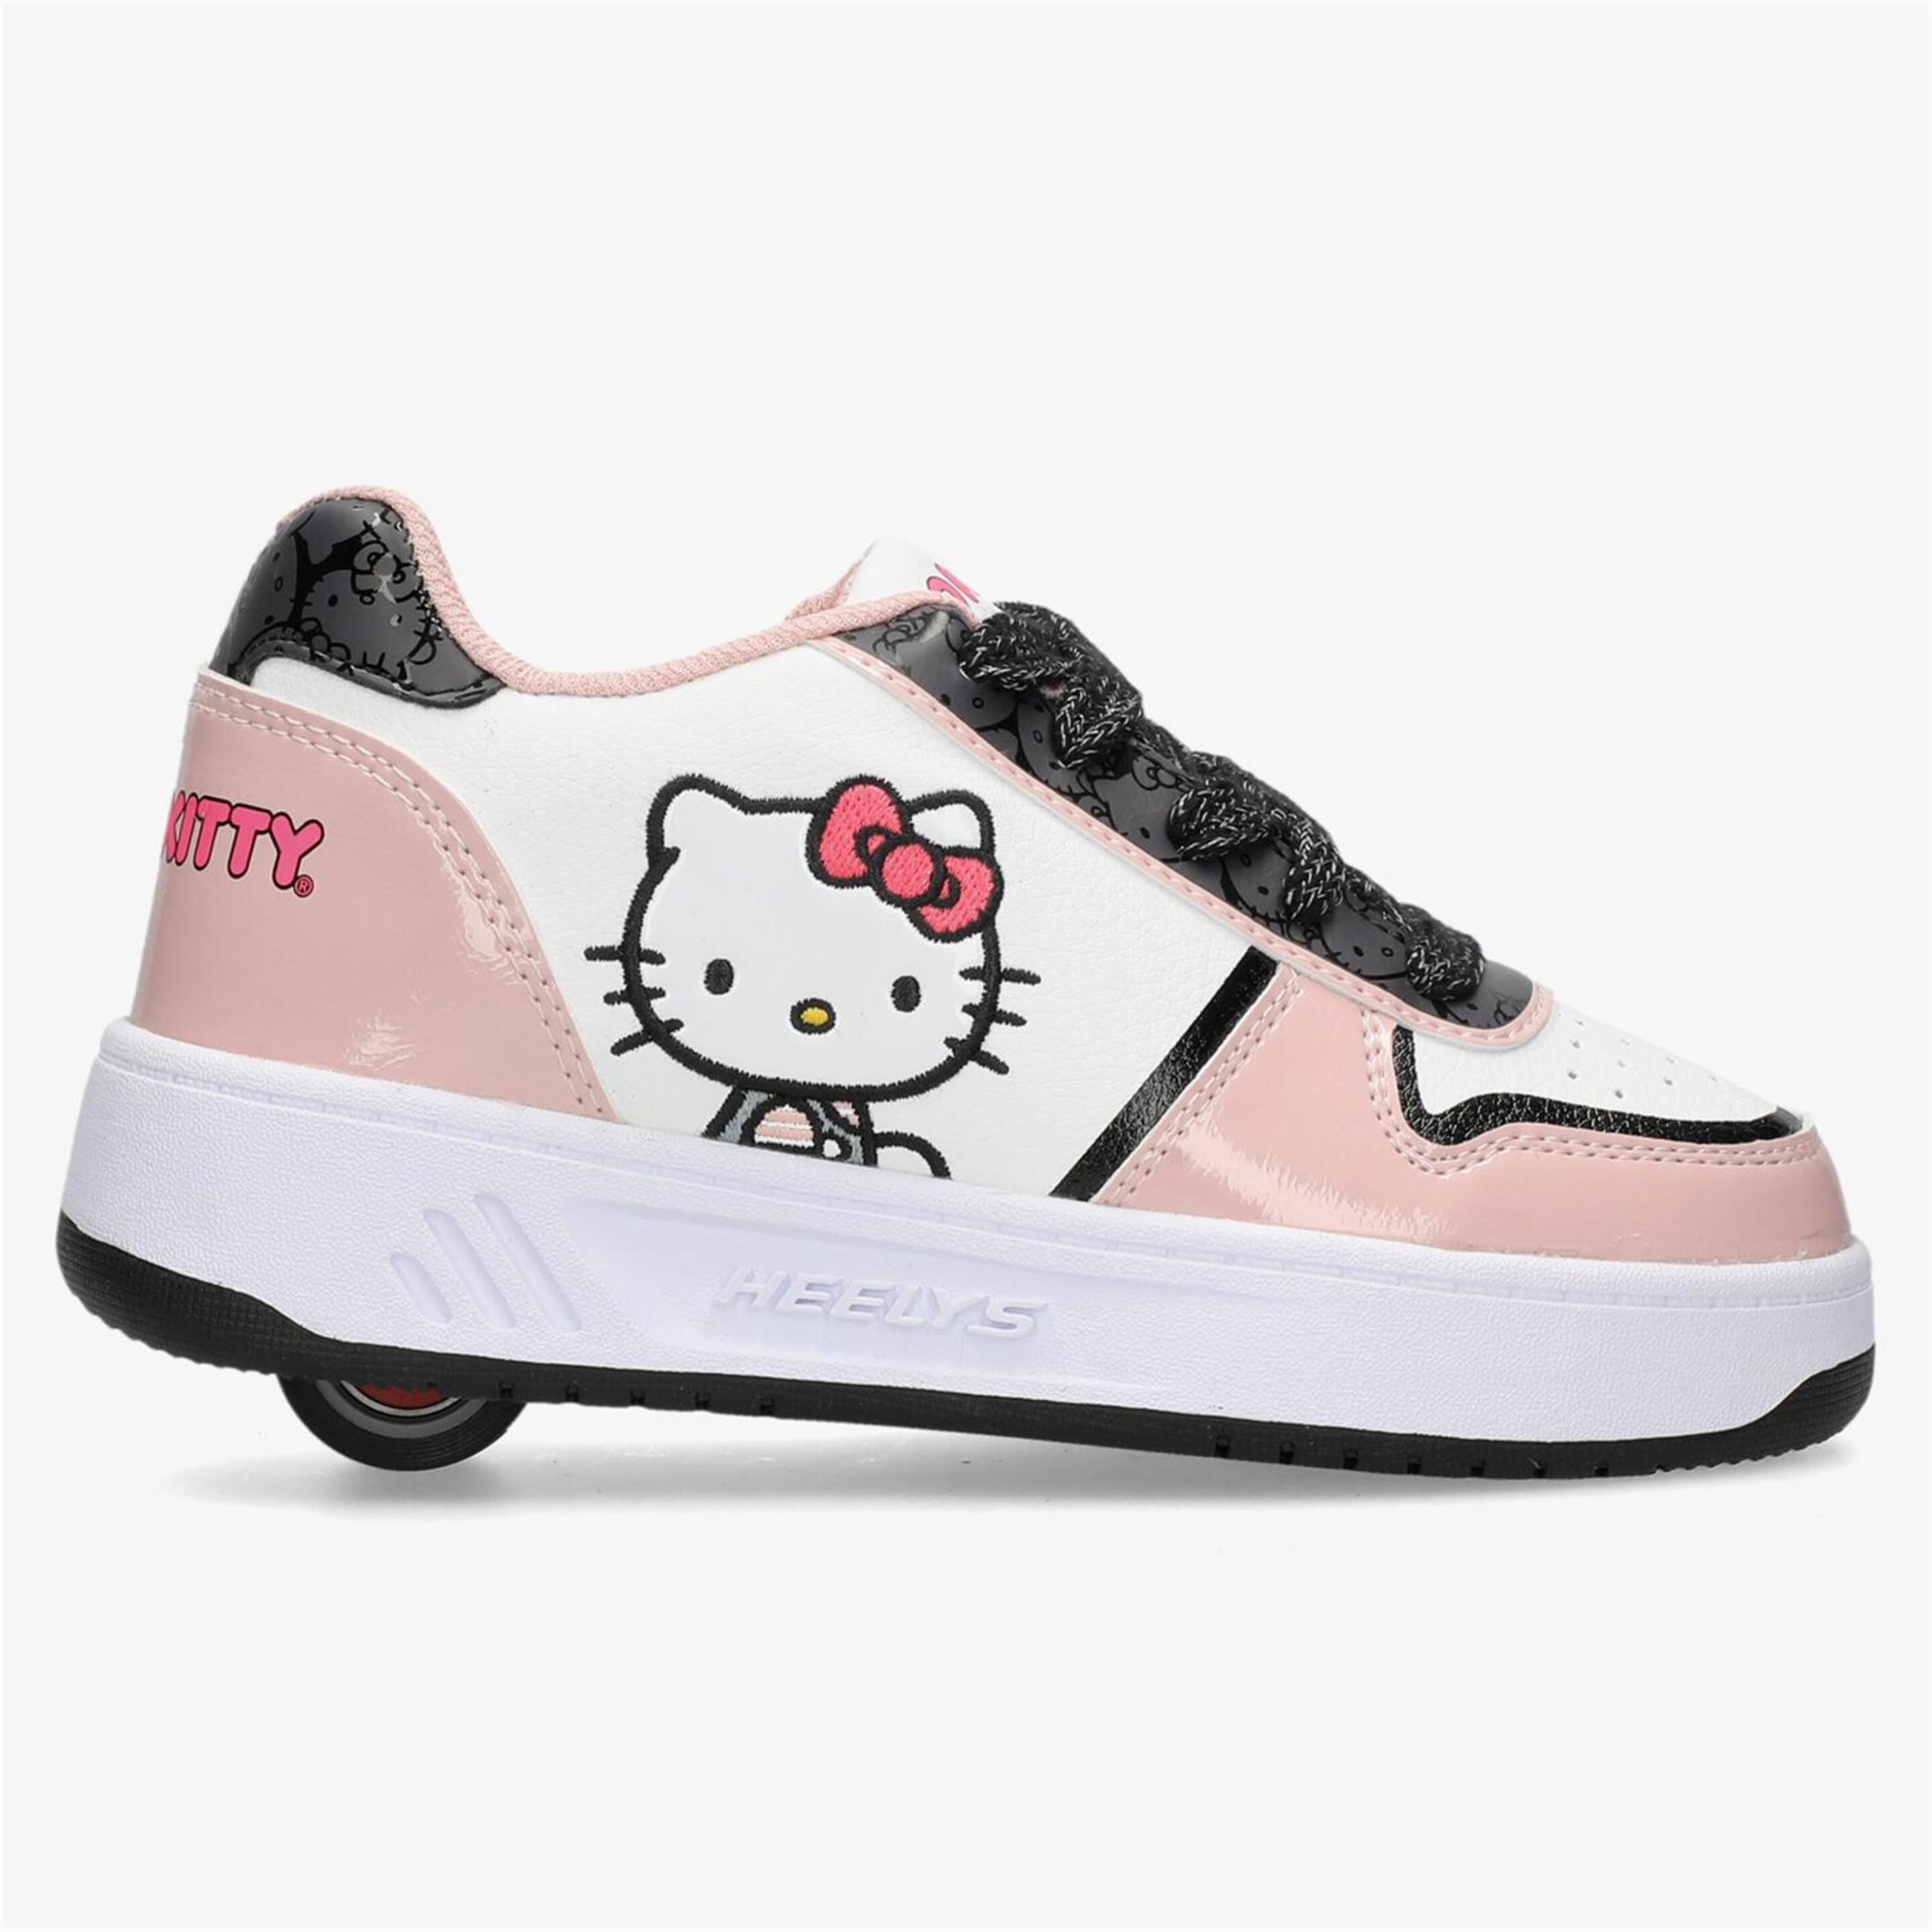 Heelys Hello Kitty